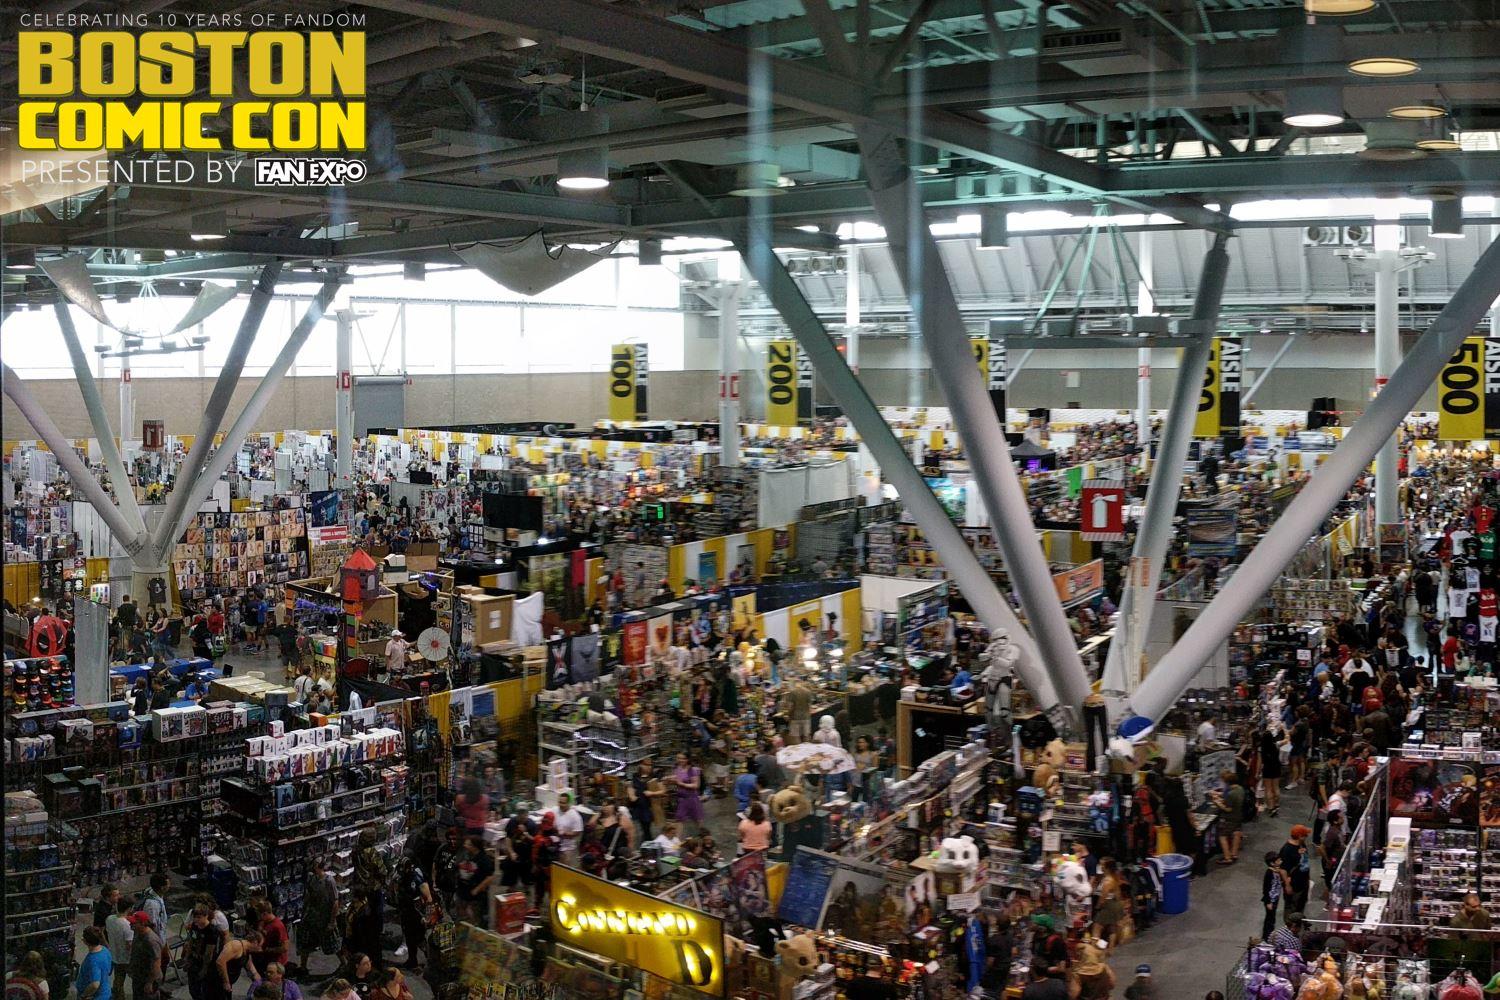 Scenes from Boston Comic Con 2017 (Fan Expo Boston) RetroZap!